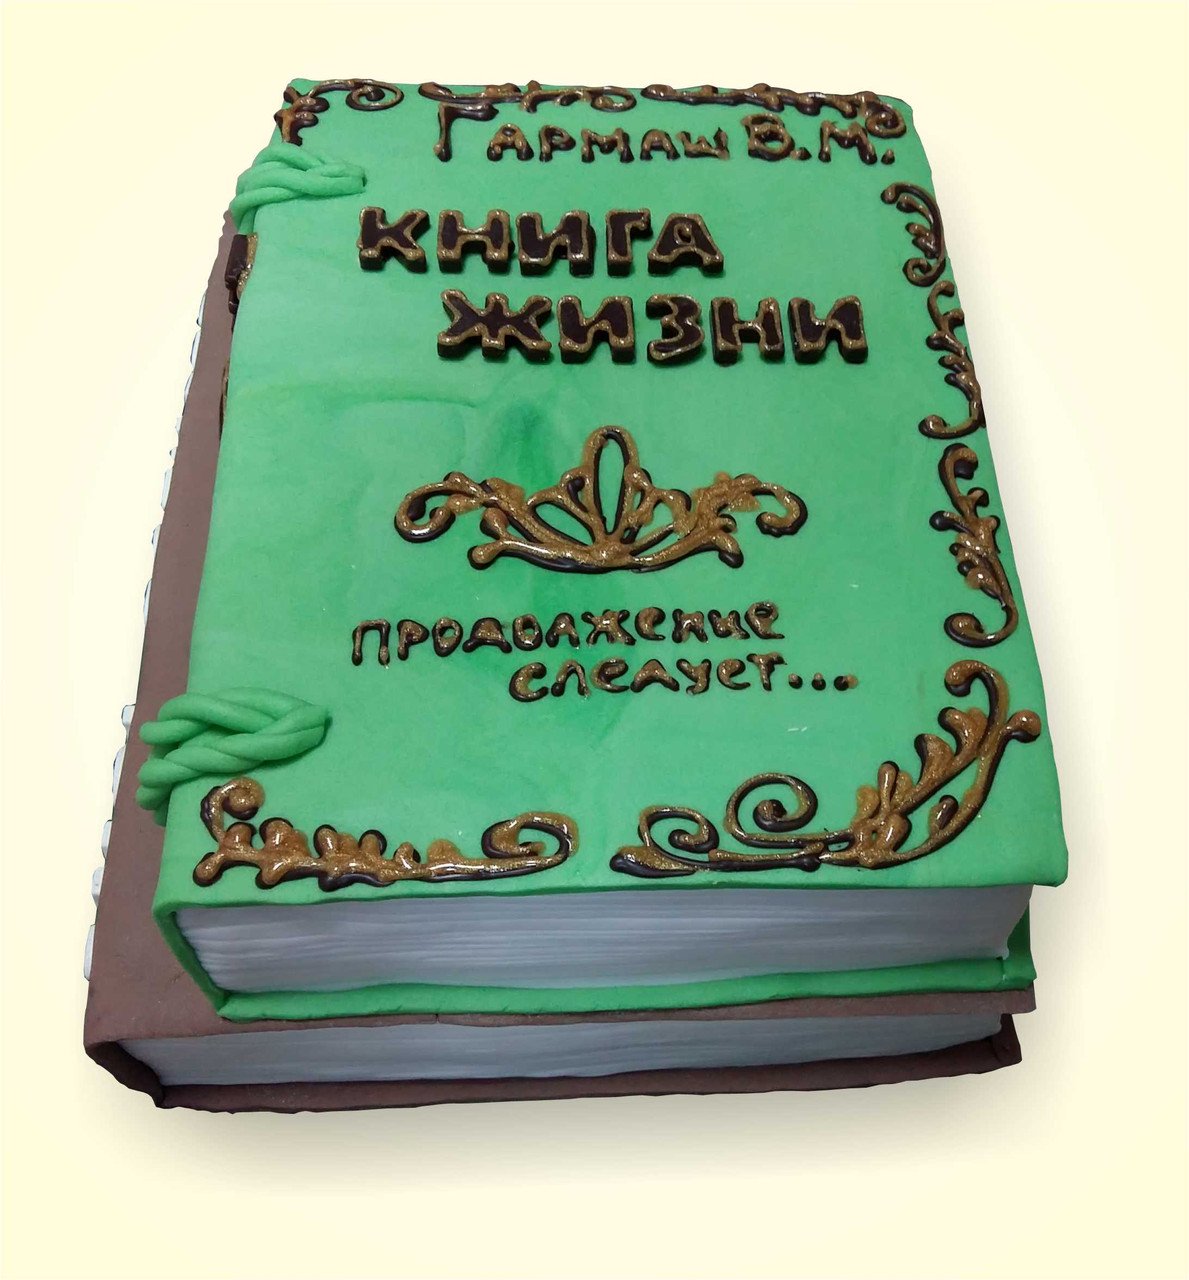 Оформление торта в виде книги